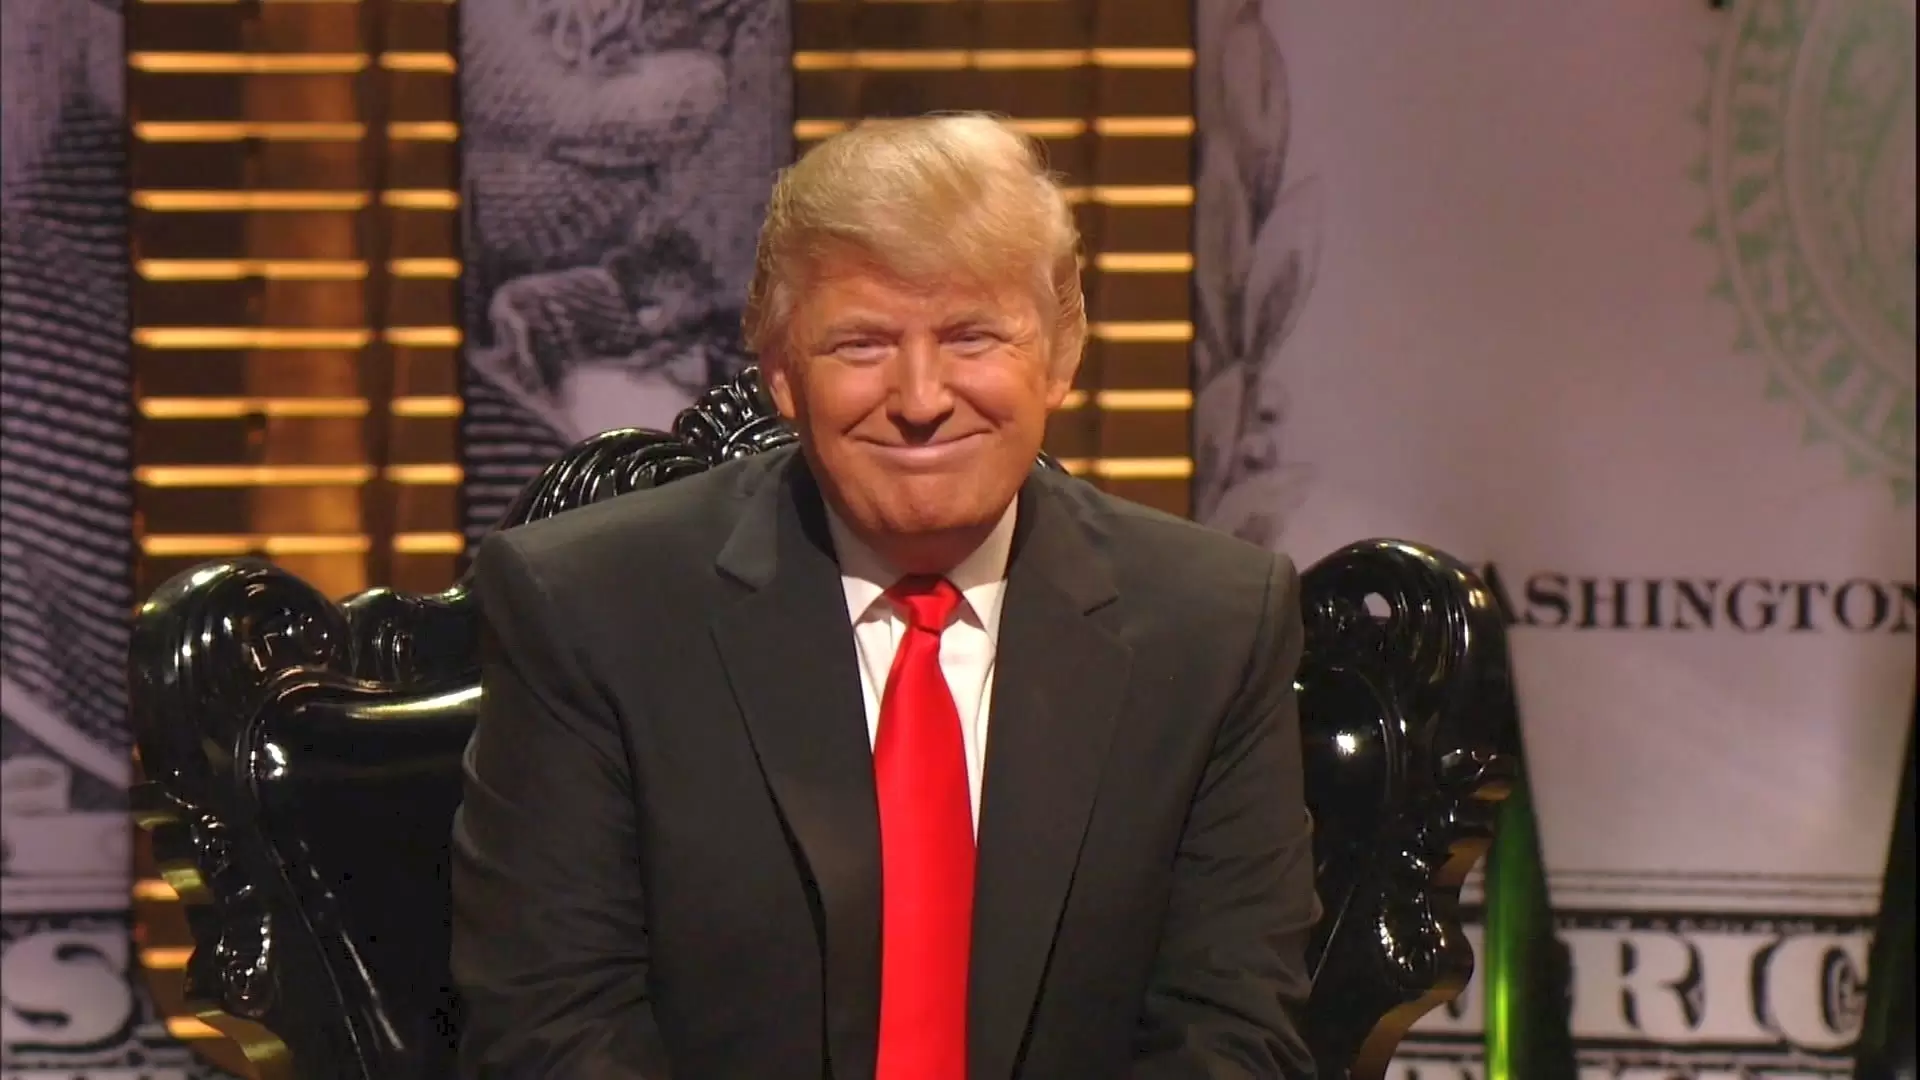 دانلود فیلم Comedy Central Roast of Donald Trump 2011 با زیرنویس فارسی